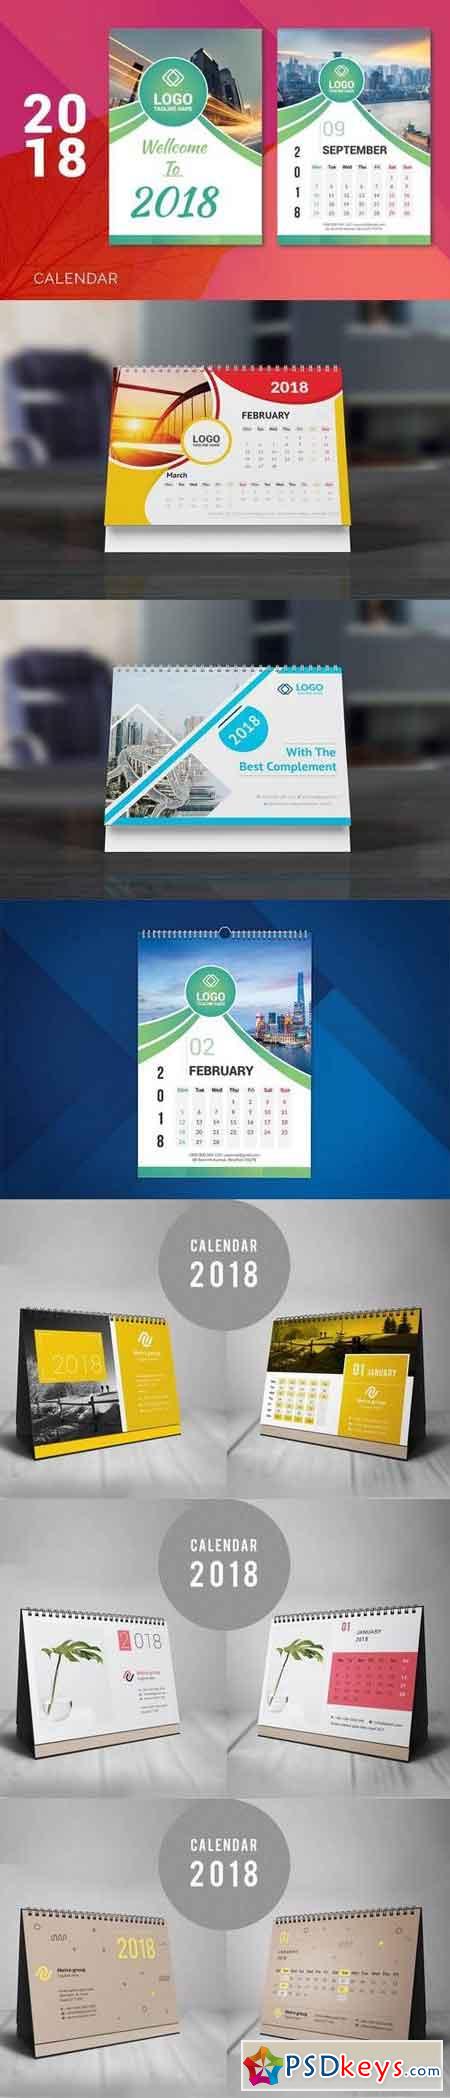 2018 Desk Calendar